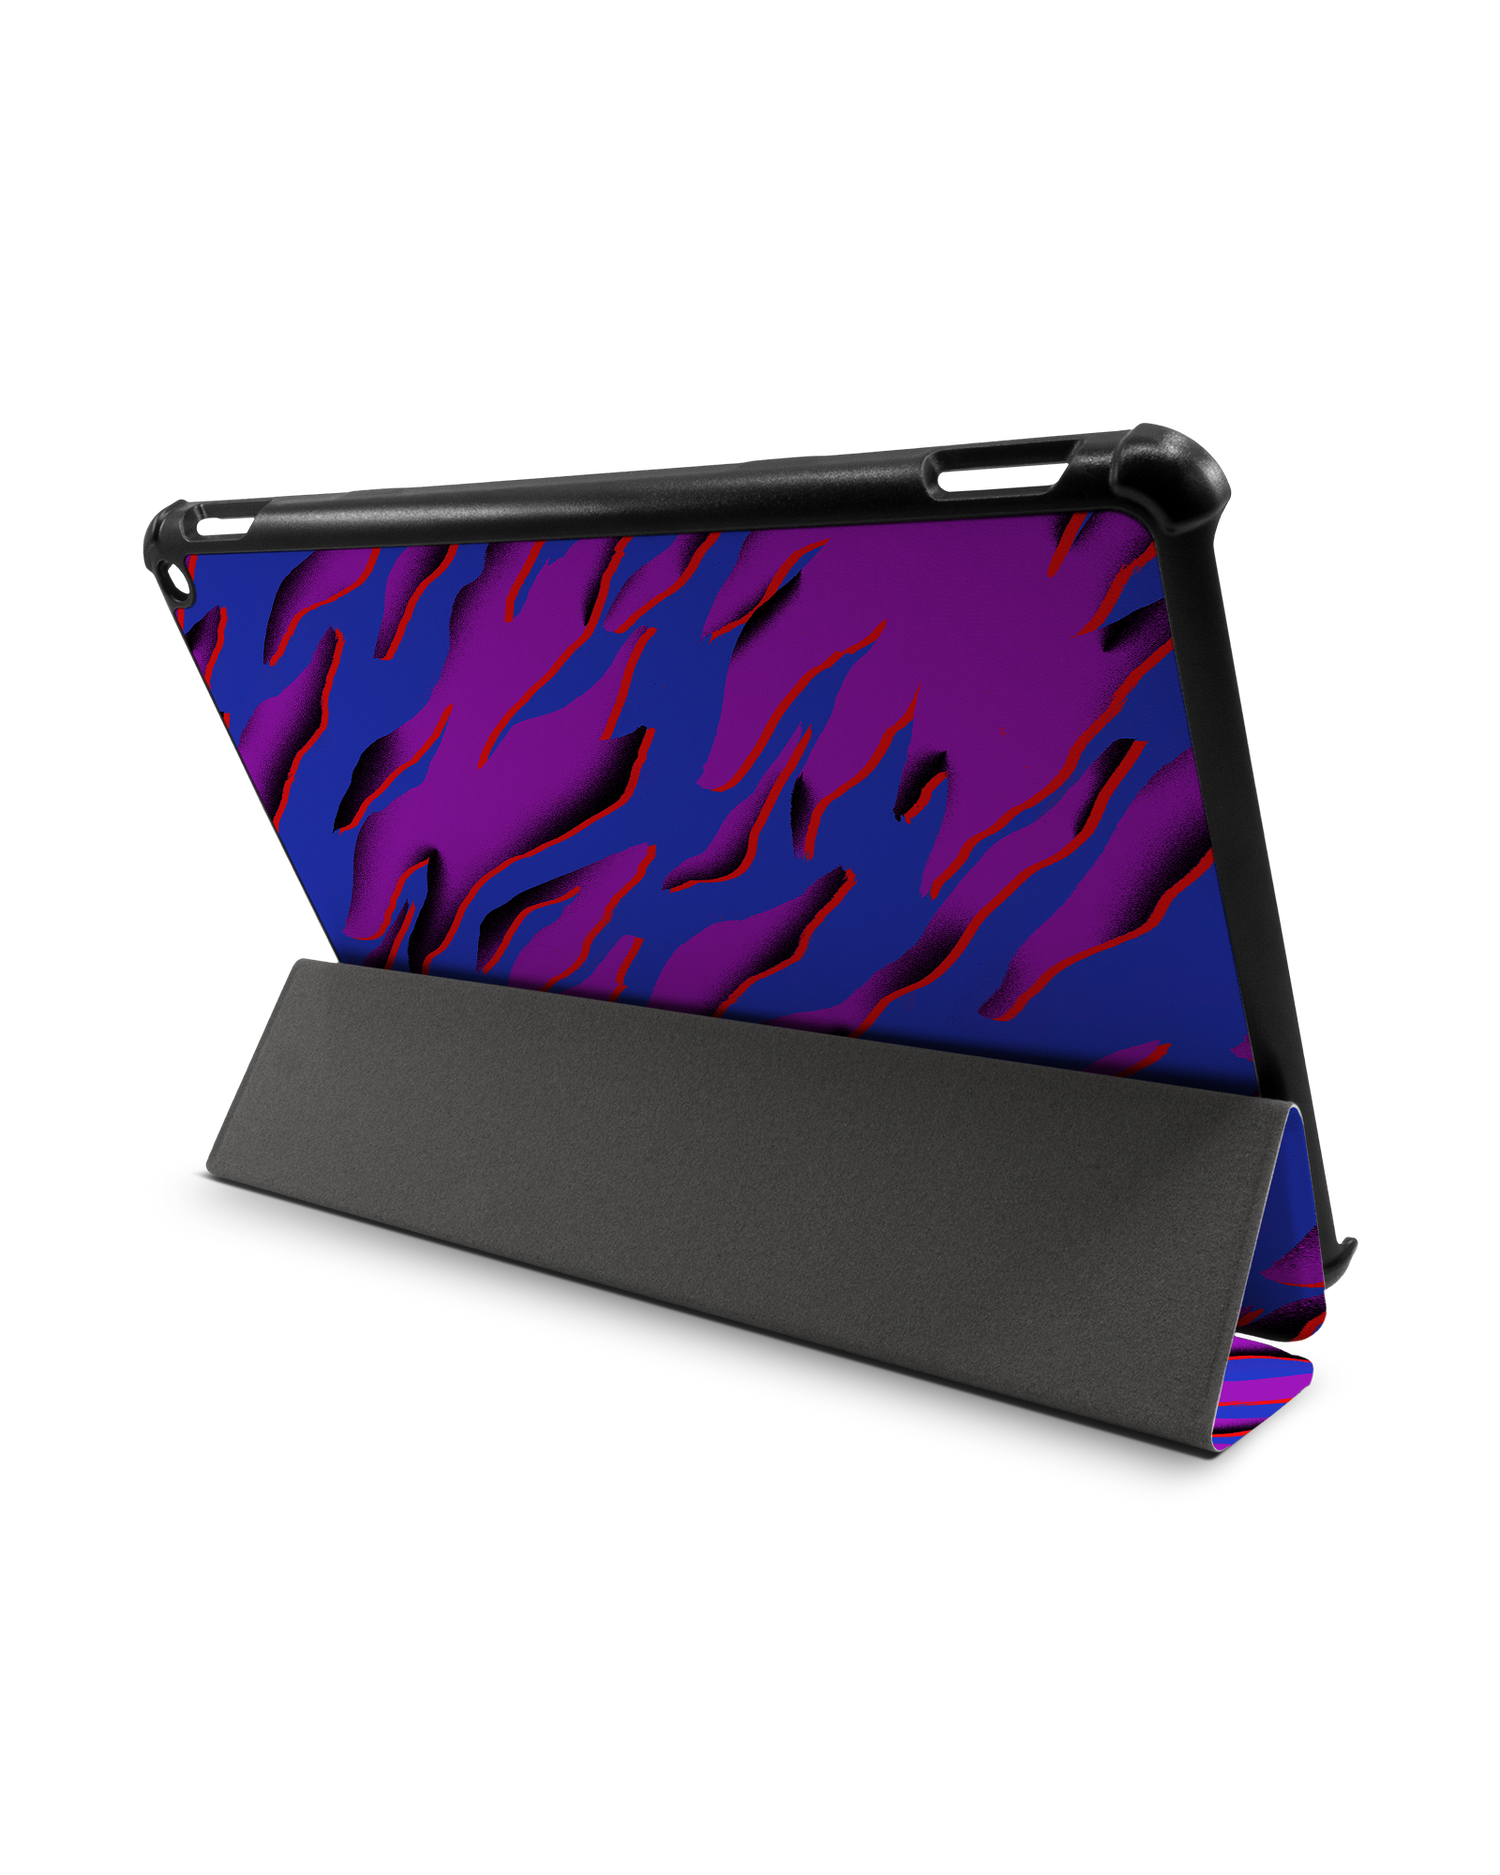 Electric Ocean 2 Tablet Smart Case für Amazon Fire HD 10 (2021): Aufgestellt im Querformat